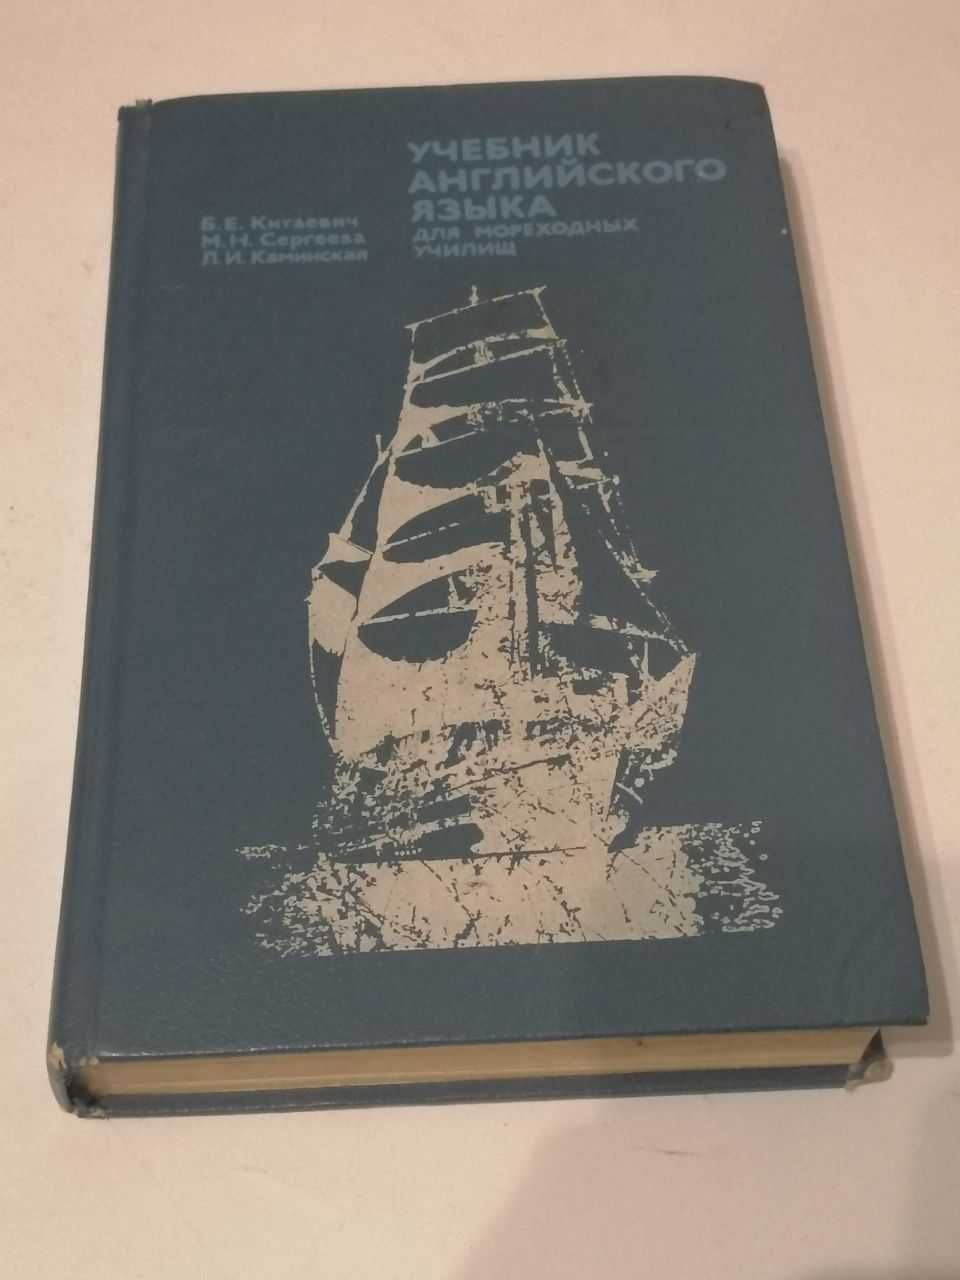 Учебник Английского Языка для моряков